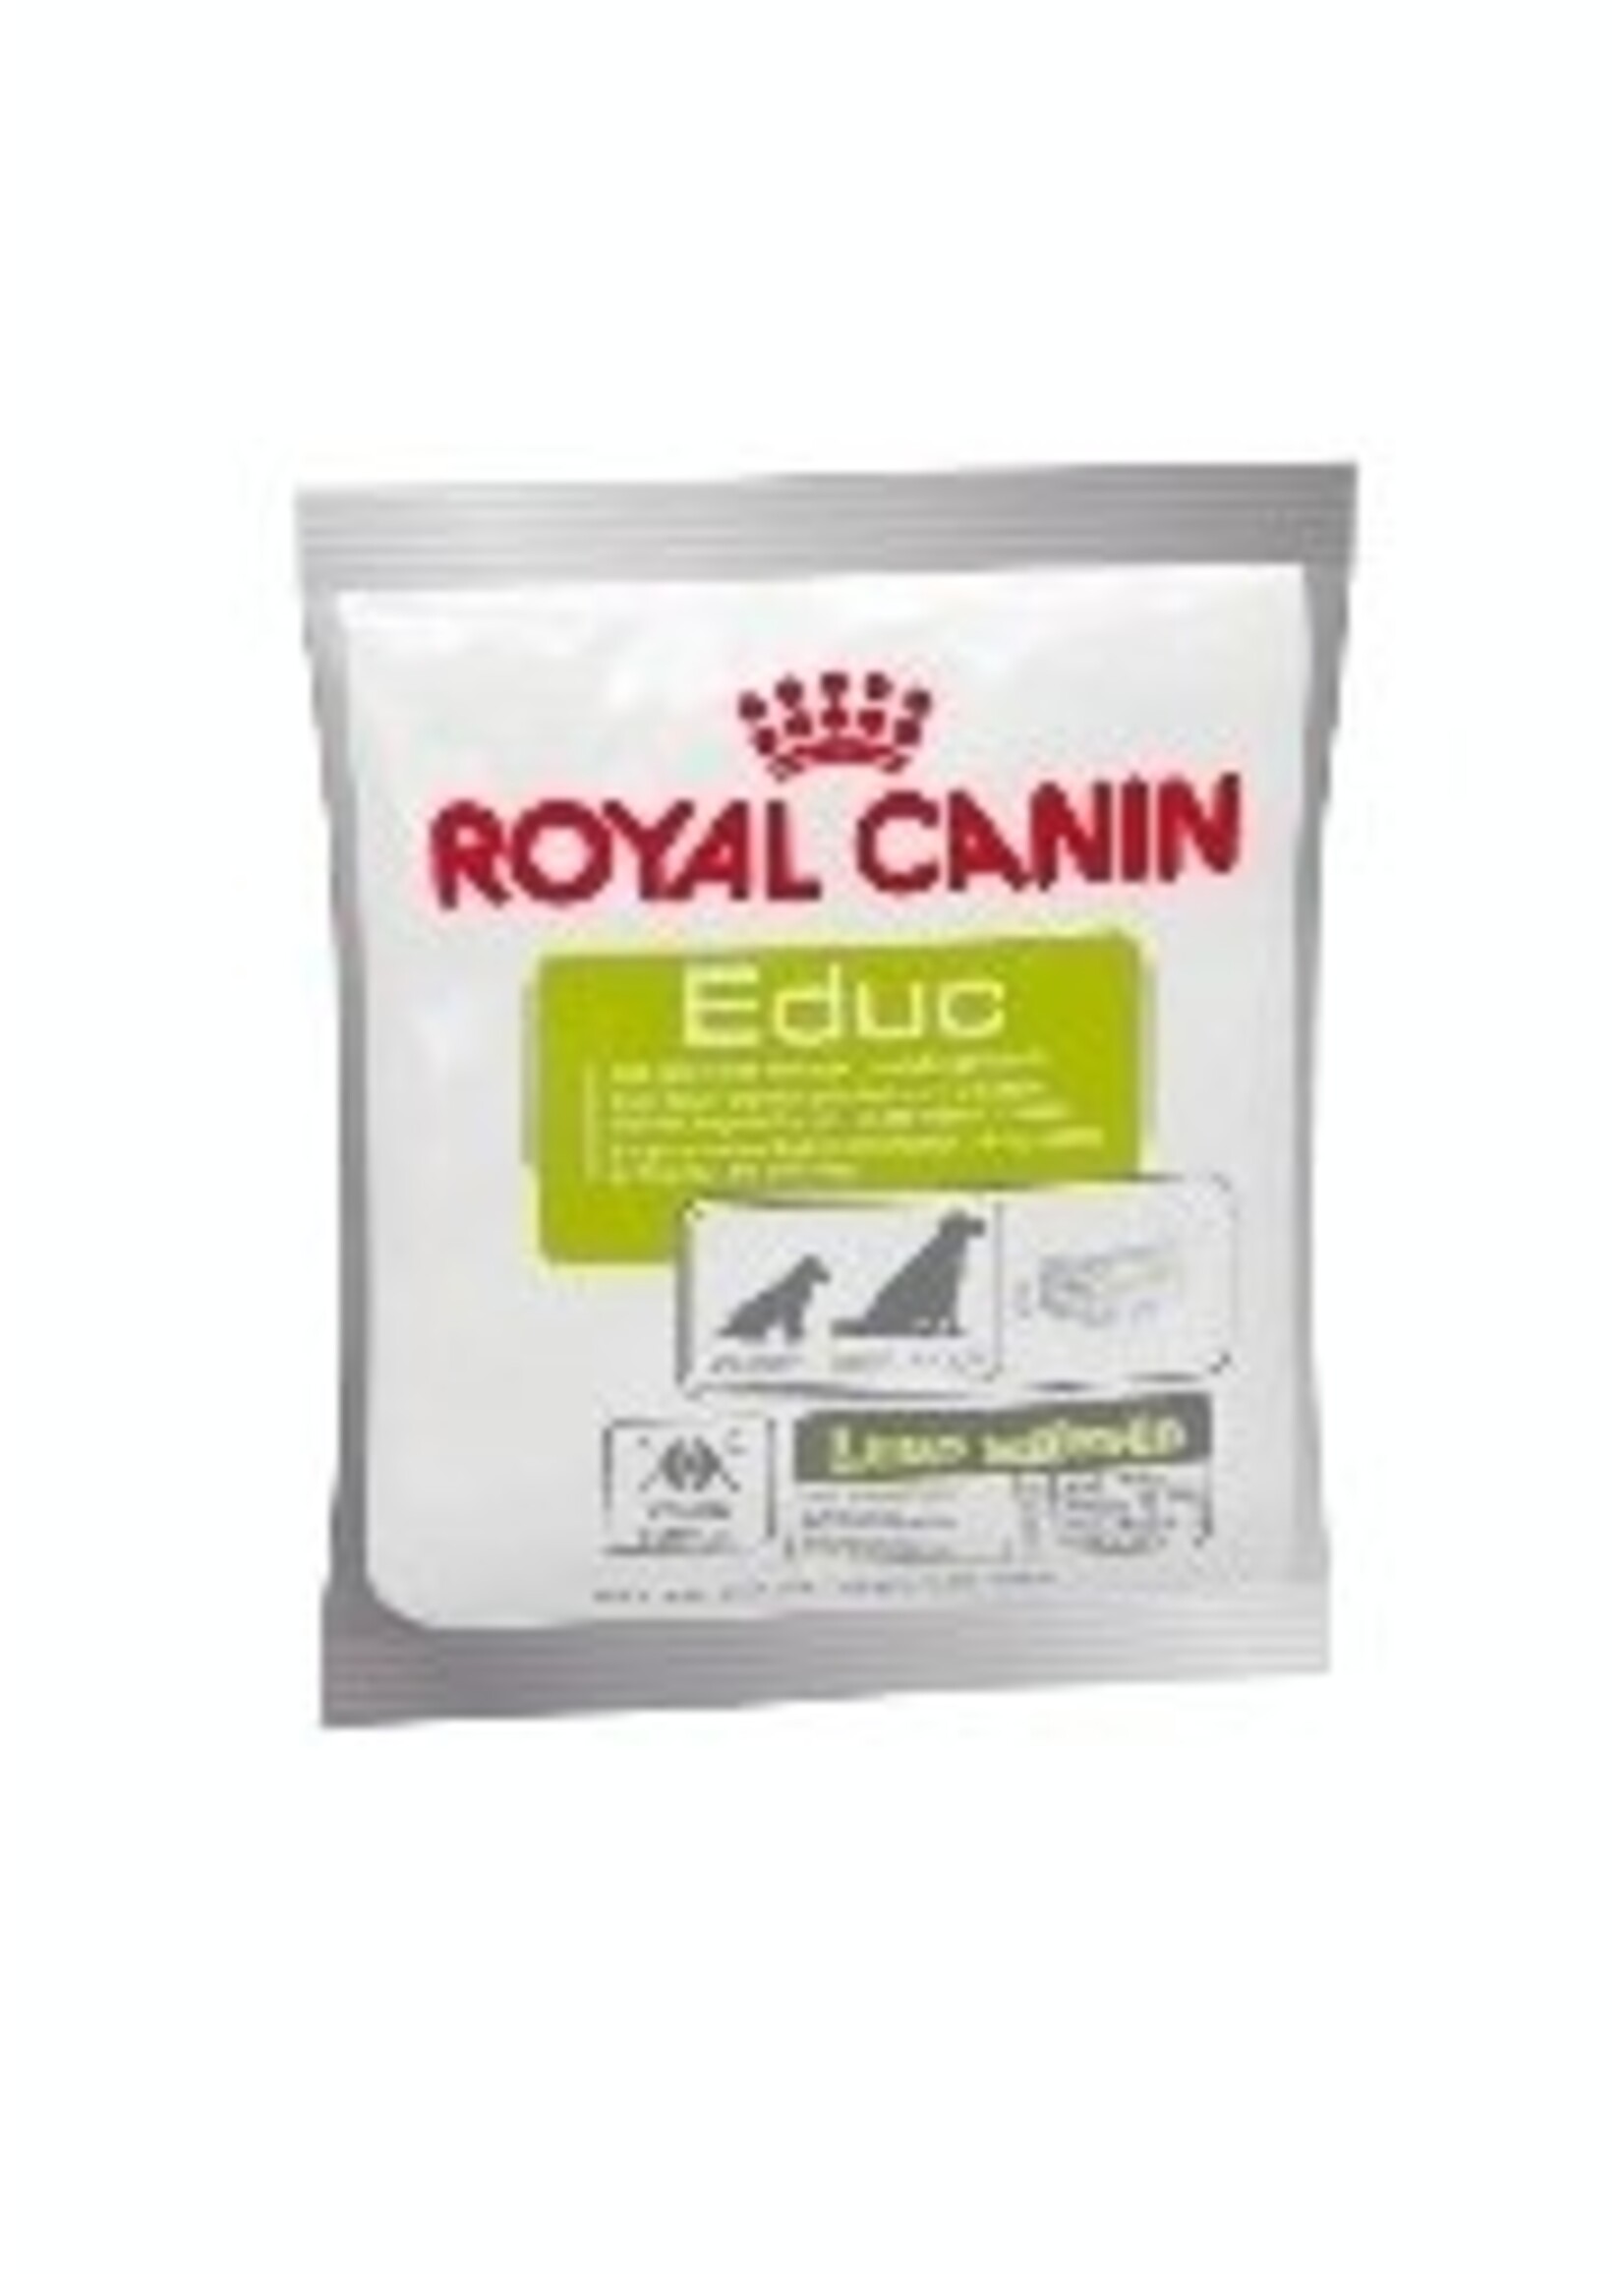 Royal Canin Royal Canin Educ Dog 30x50gr